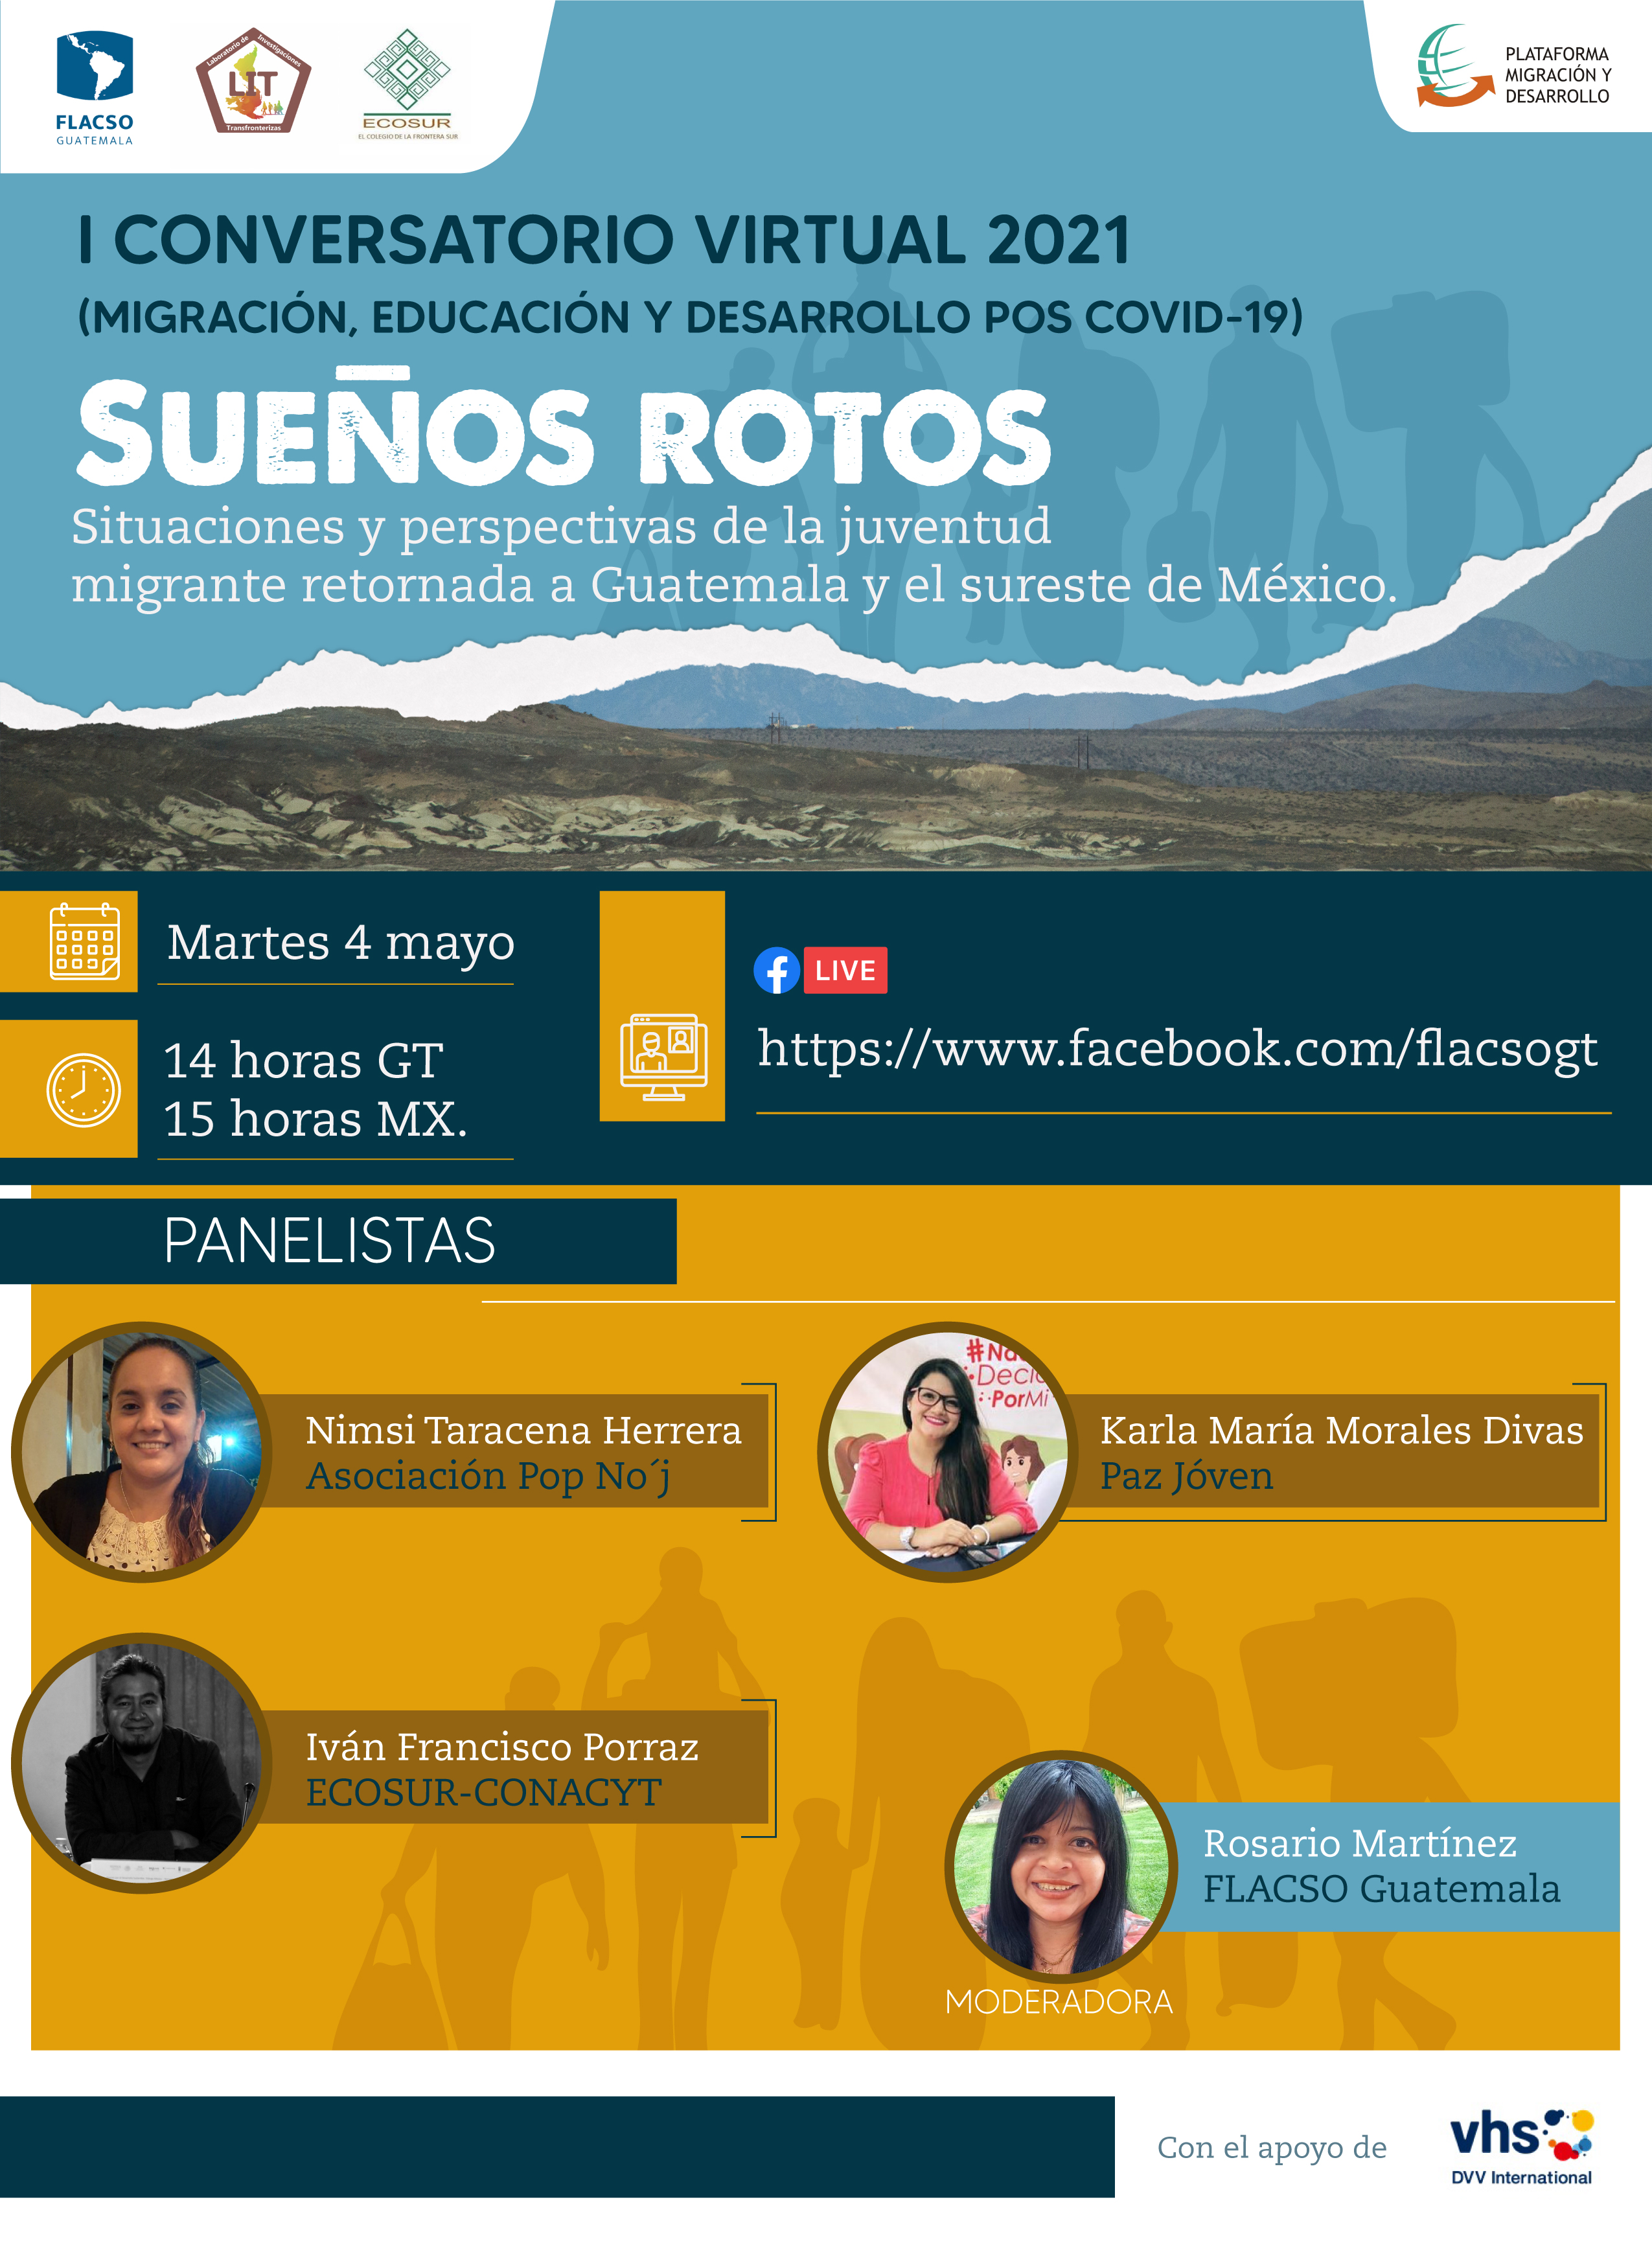 Conversatorio de FLACSO – Guatemala “Migración, educación y desarrollo pos COVID-19”